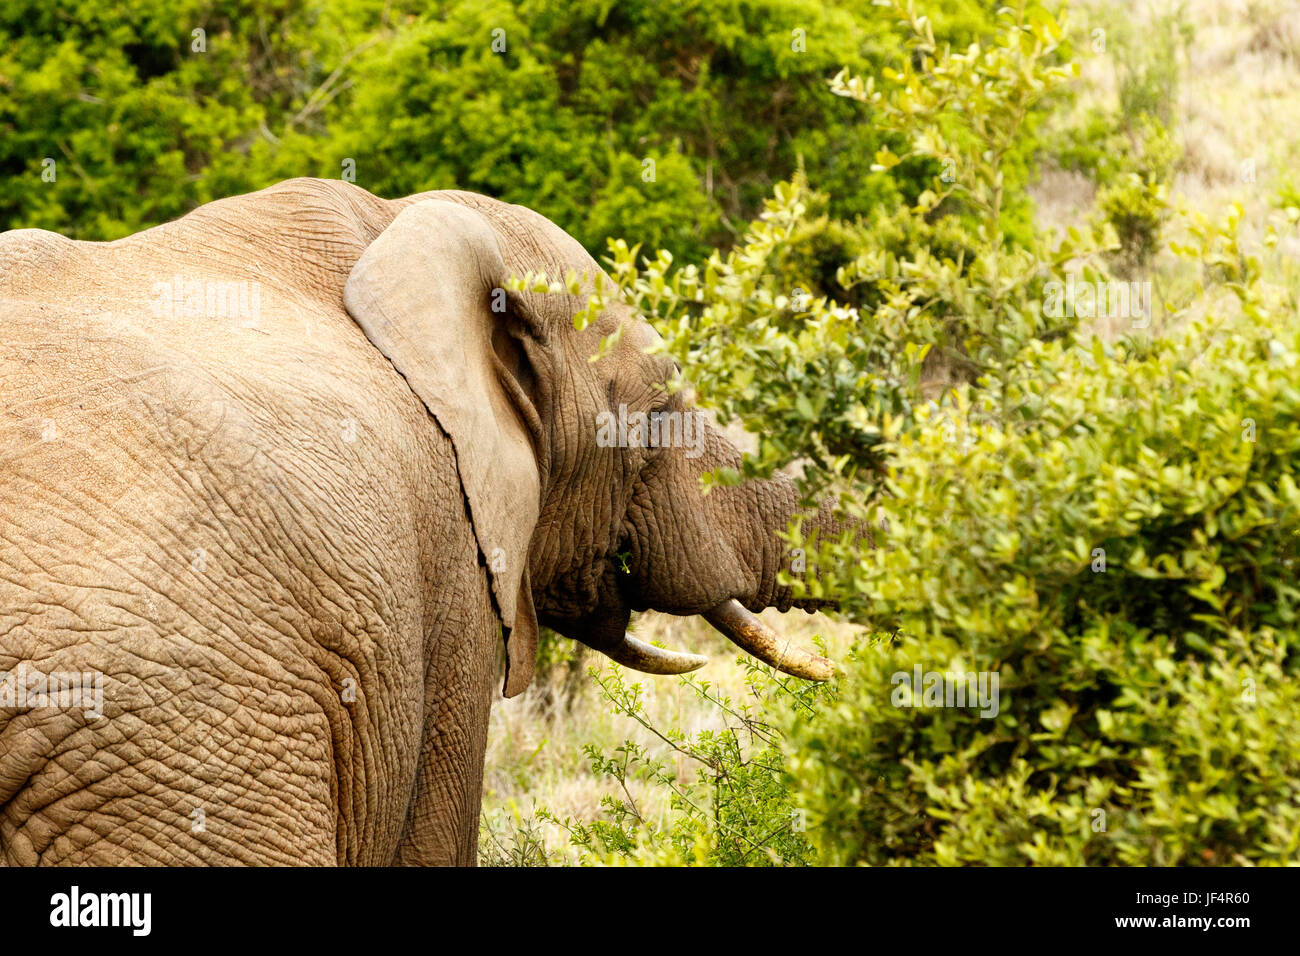 Bush Elephant eating in the bushes Stock Photo